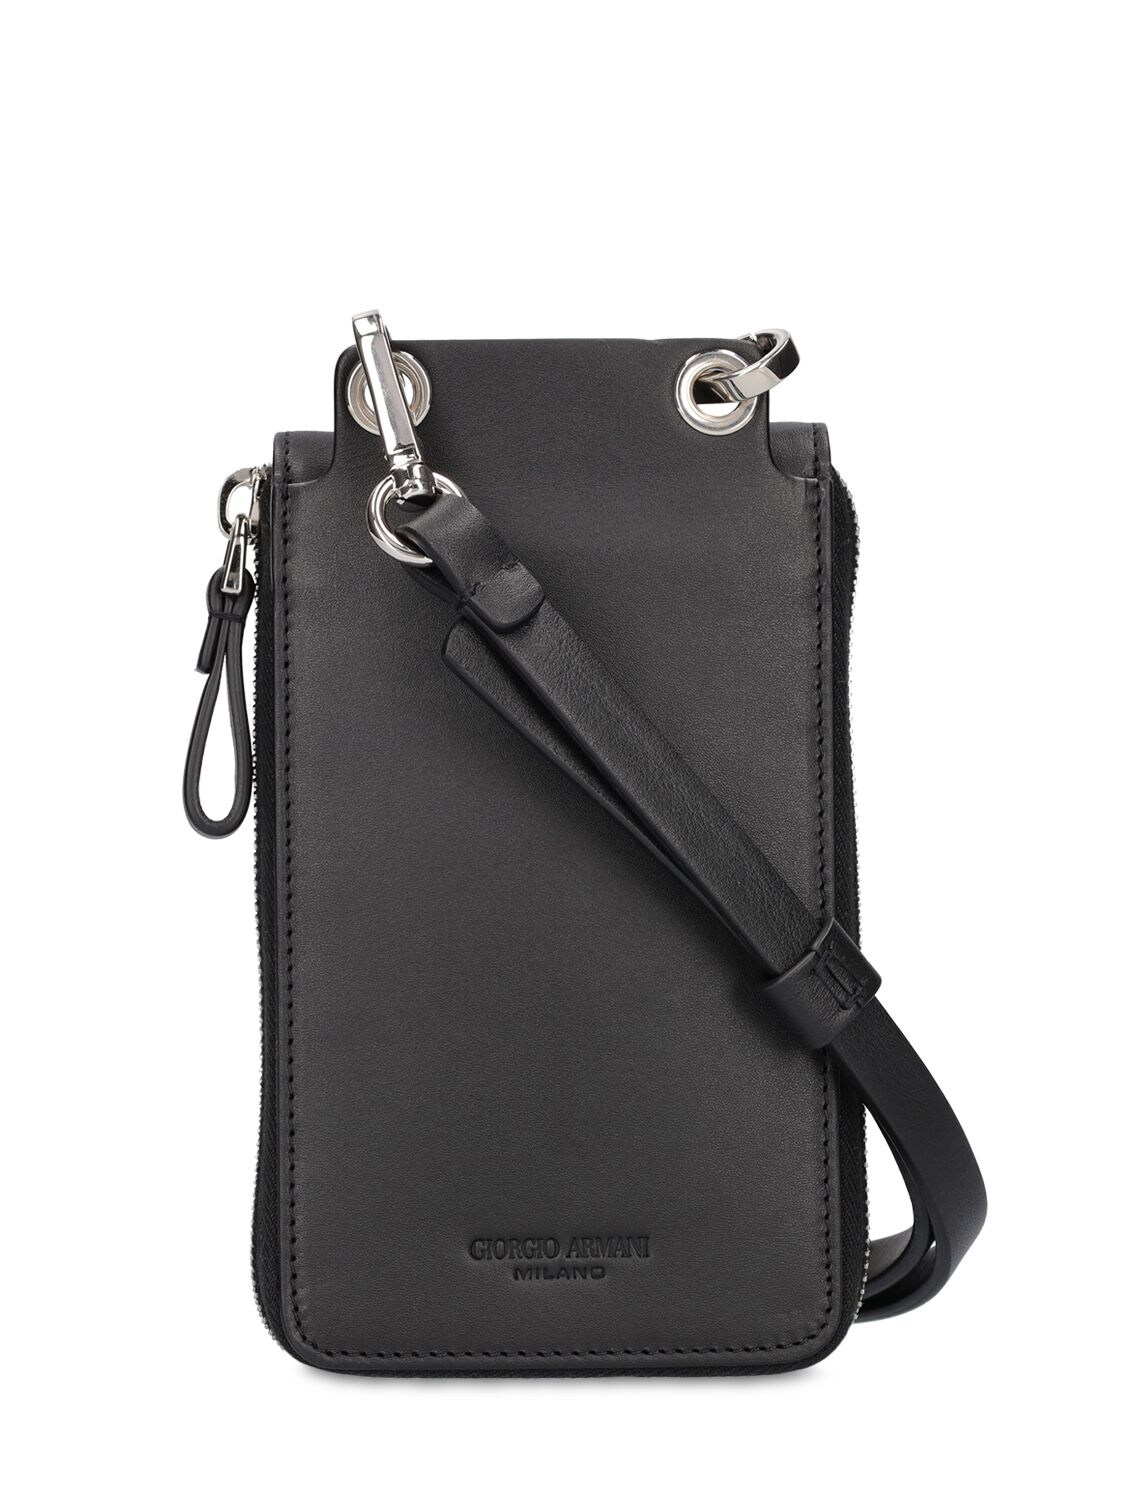 Giorgio Armani Logo Tiger Leather Phone Case W/ Strap In Black | ModeSens